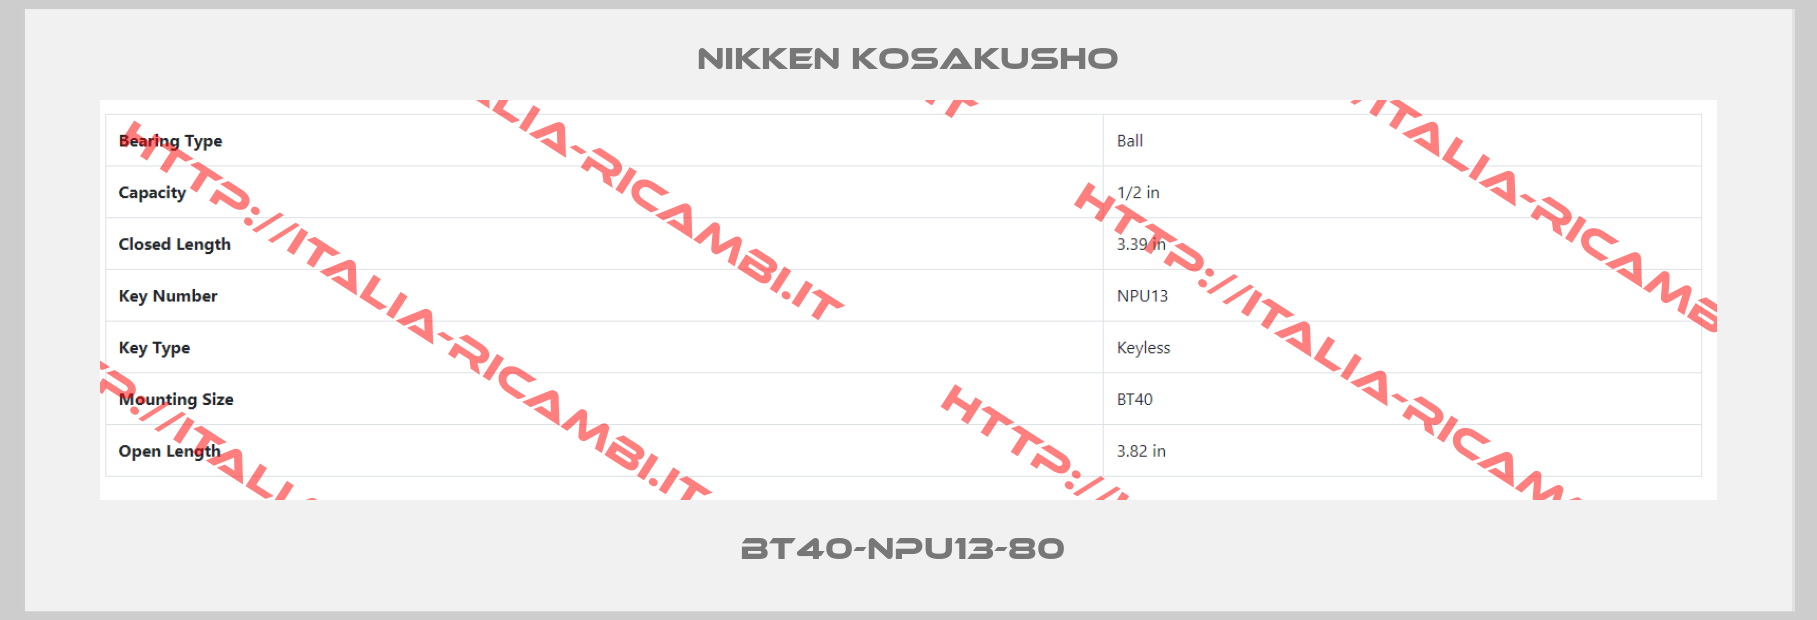 NIKKEN KOSAKUSHO-BT40-NPU13-80 